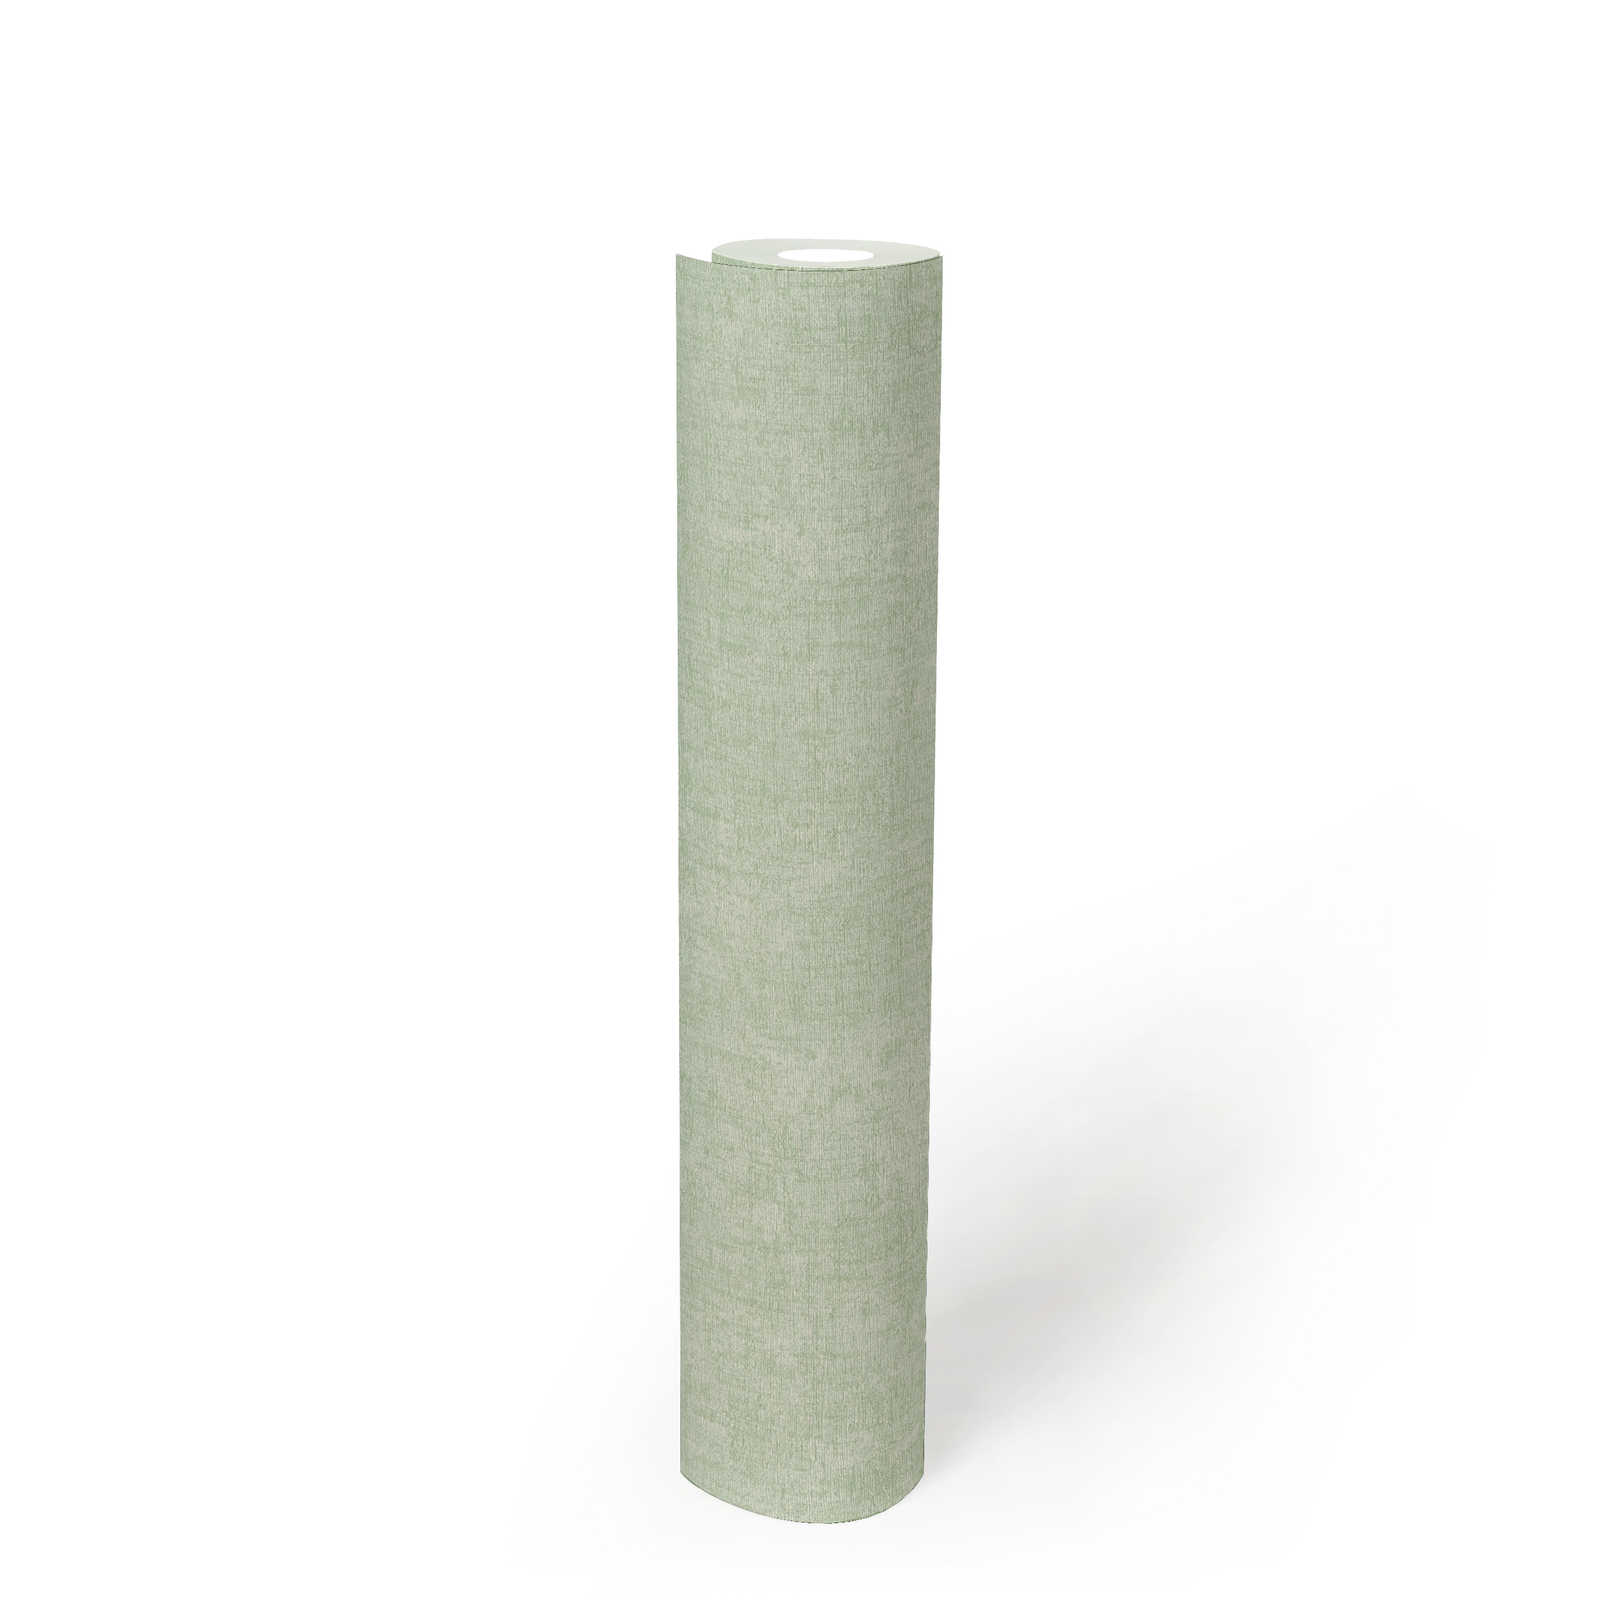             Mintgrüne Tapete einfarbig mit Strukturdetails – Grün
        